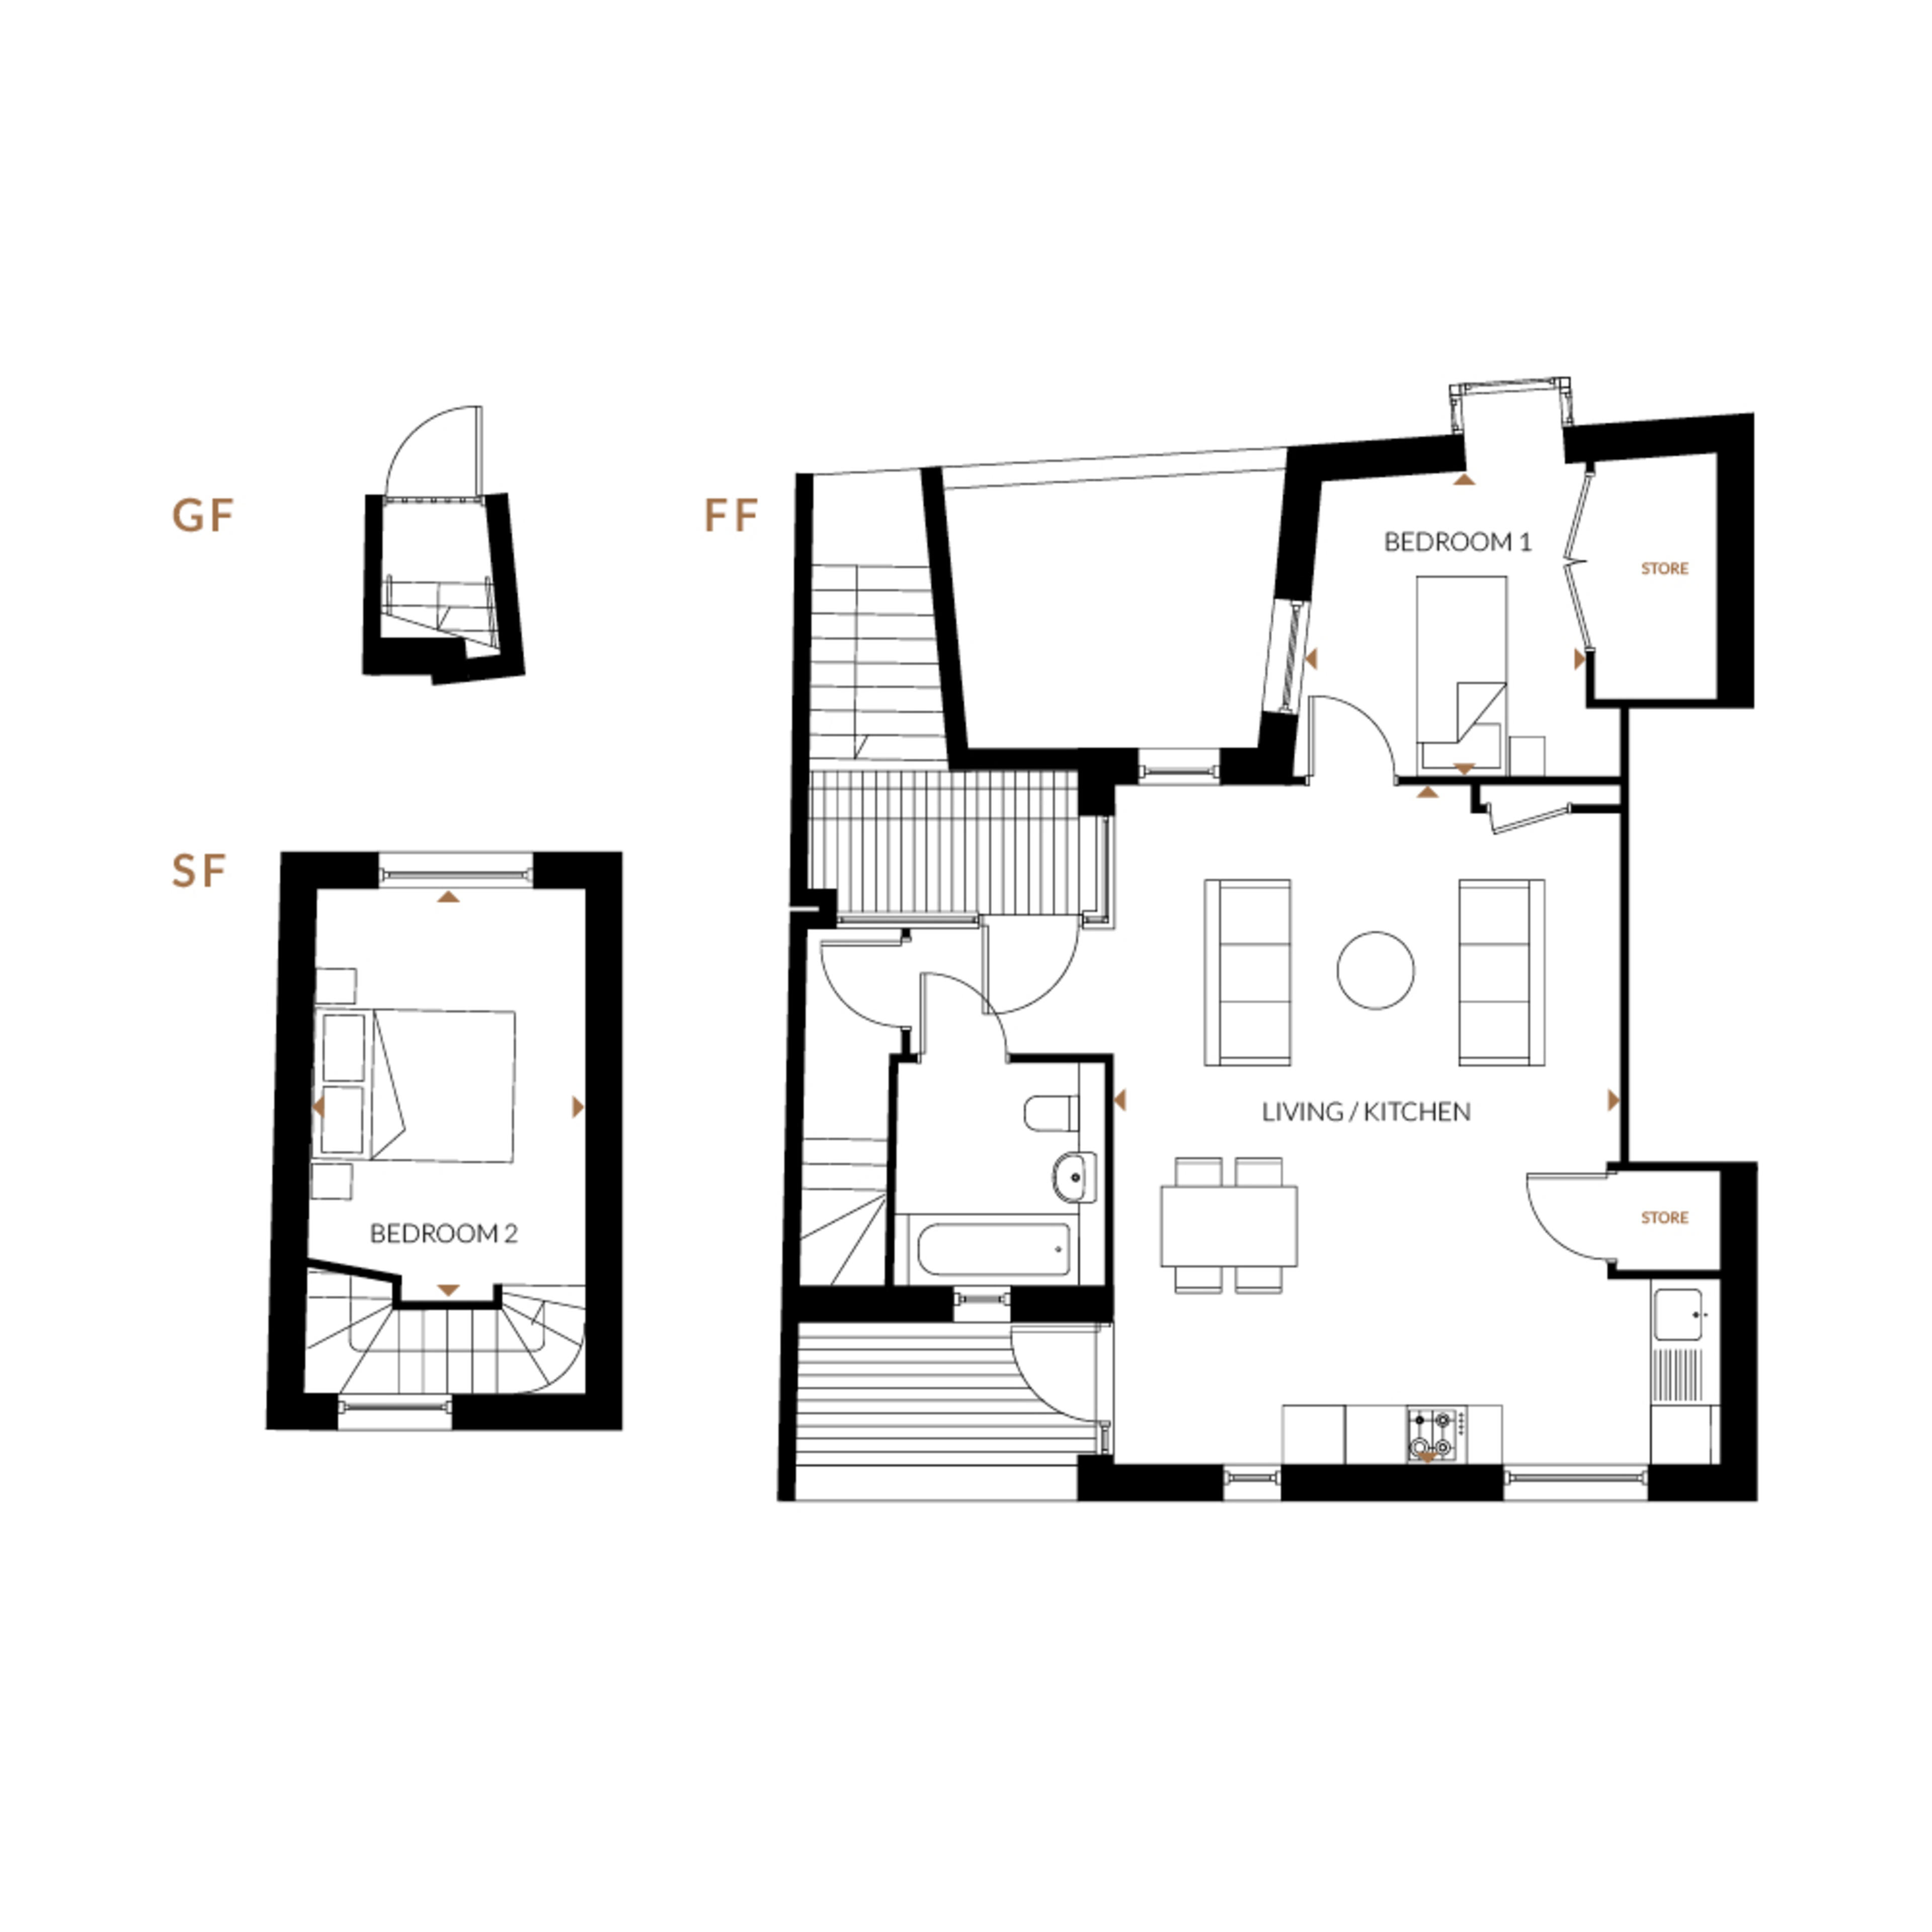 Edgewood-mews-floorplan-2-bed-type-G